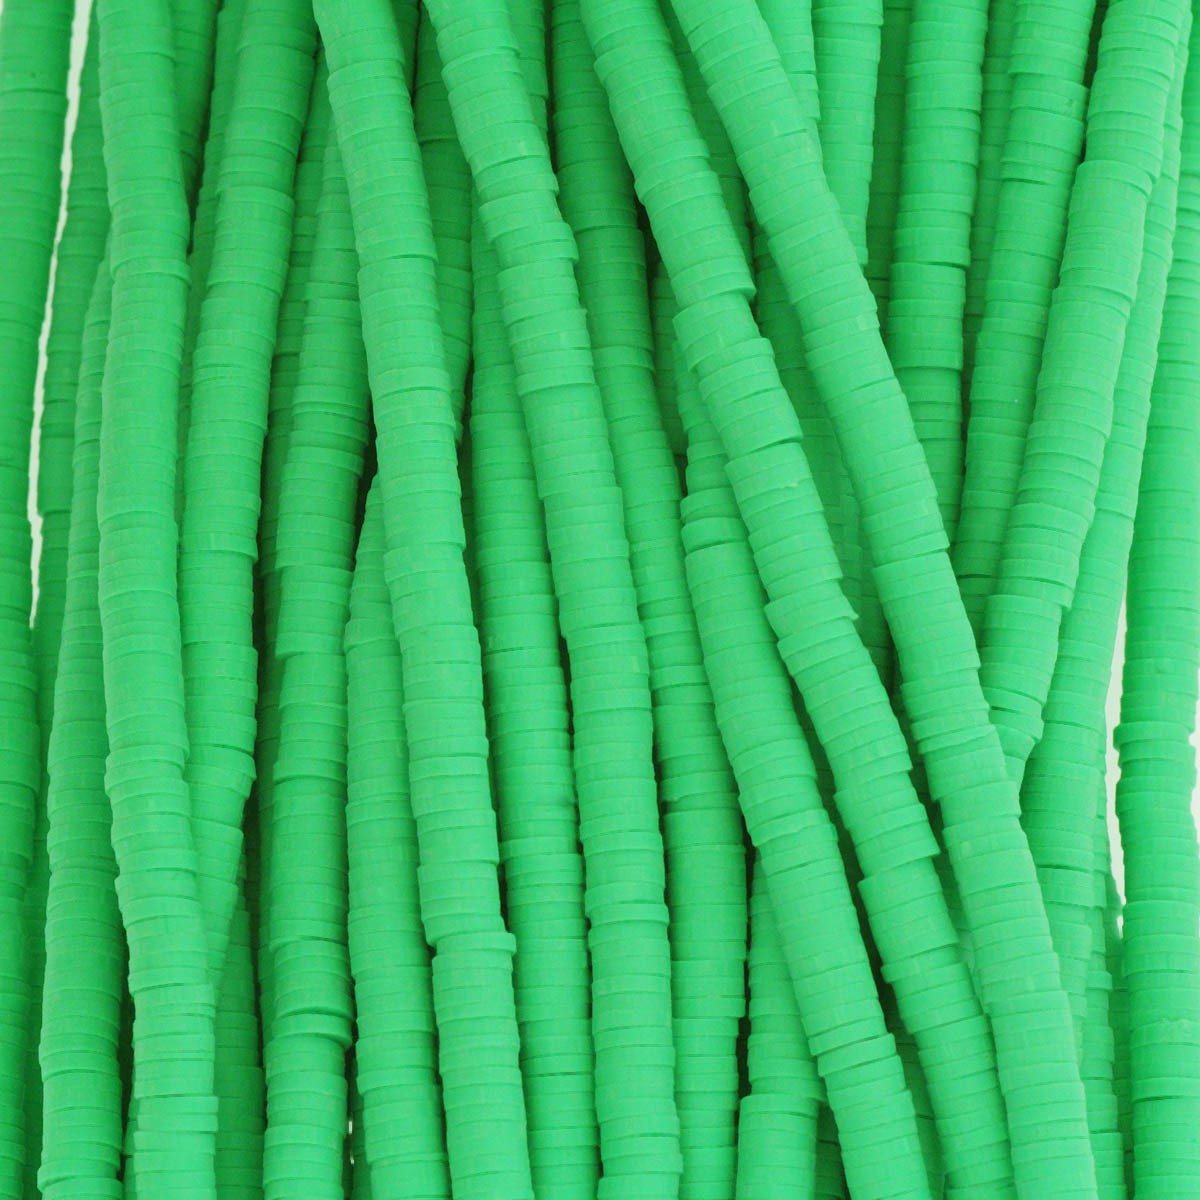 Katsuki beads / intense green / 4mm discs / 40cm rope / MOKA04071